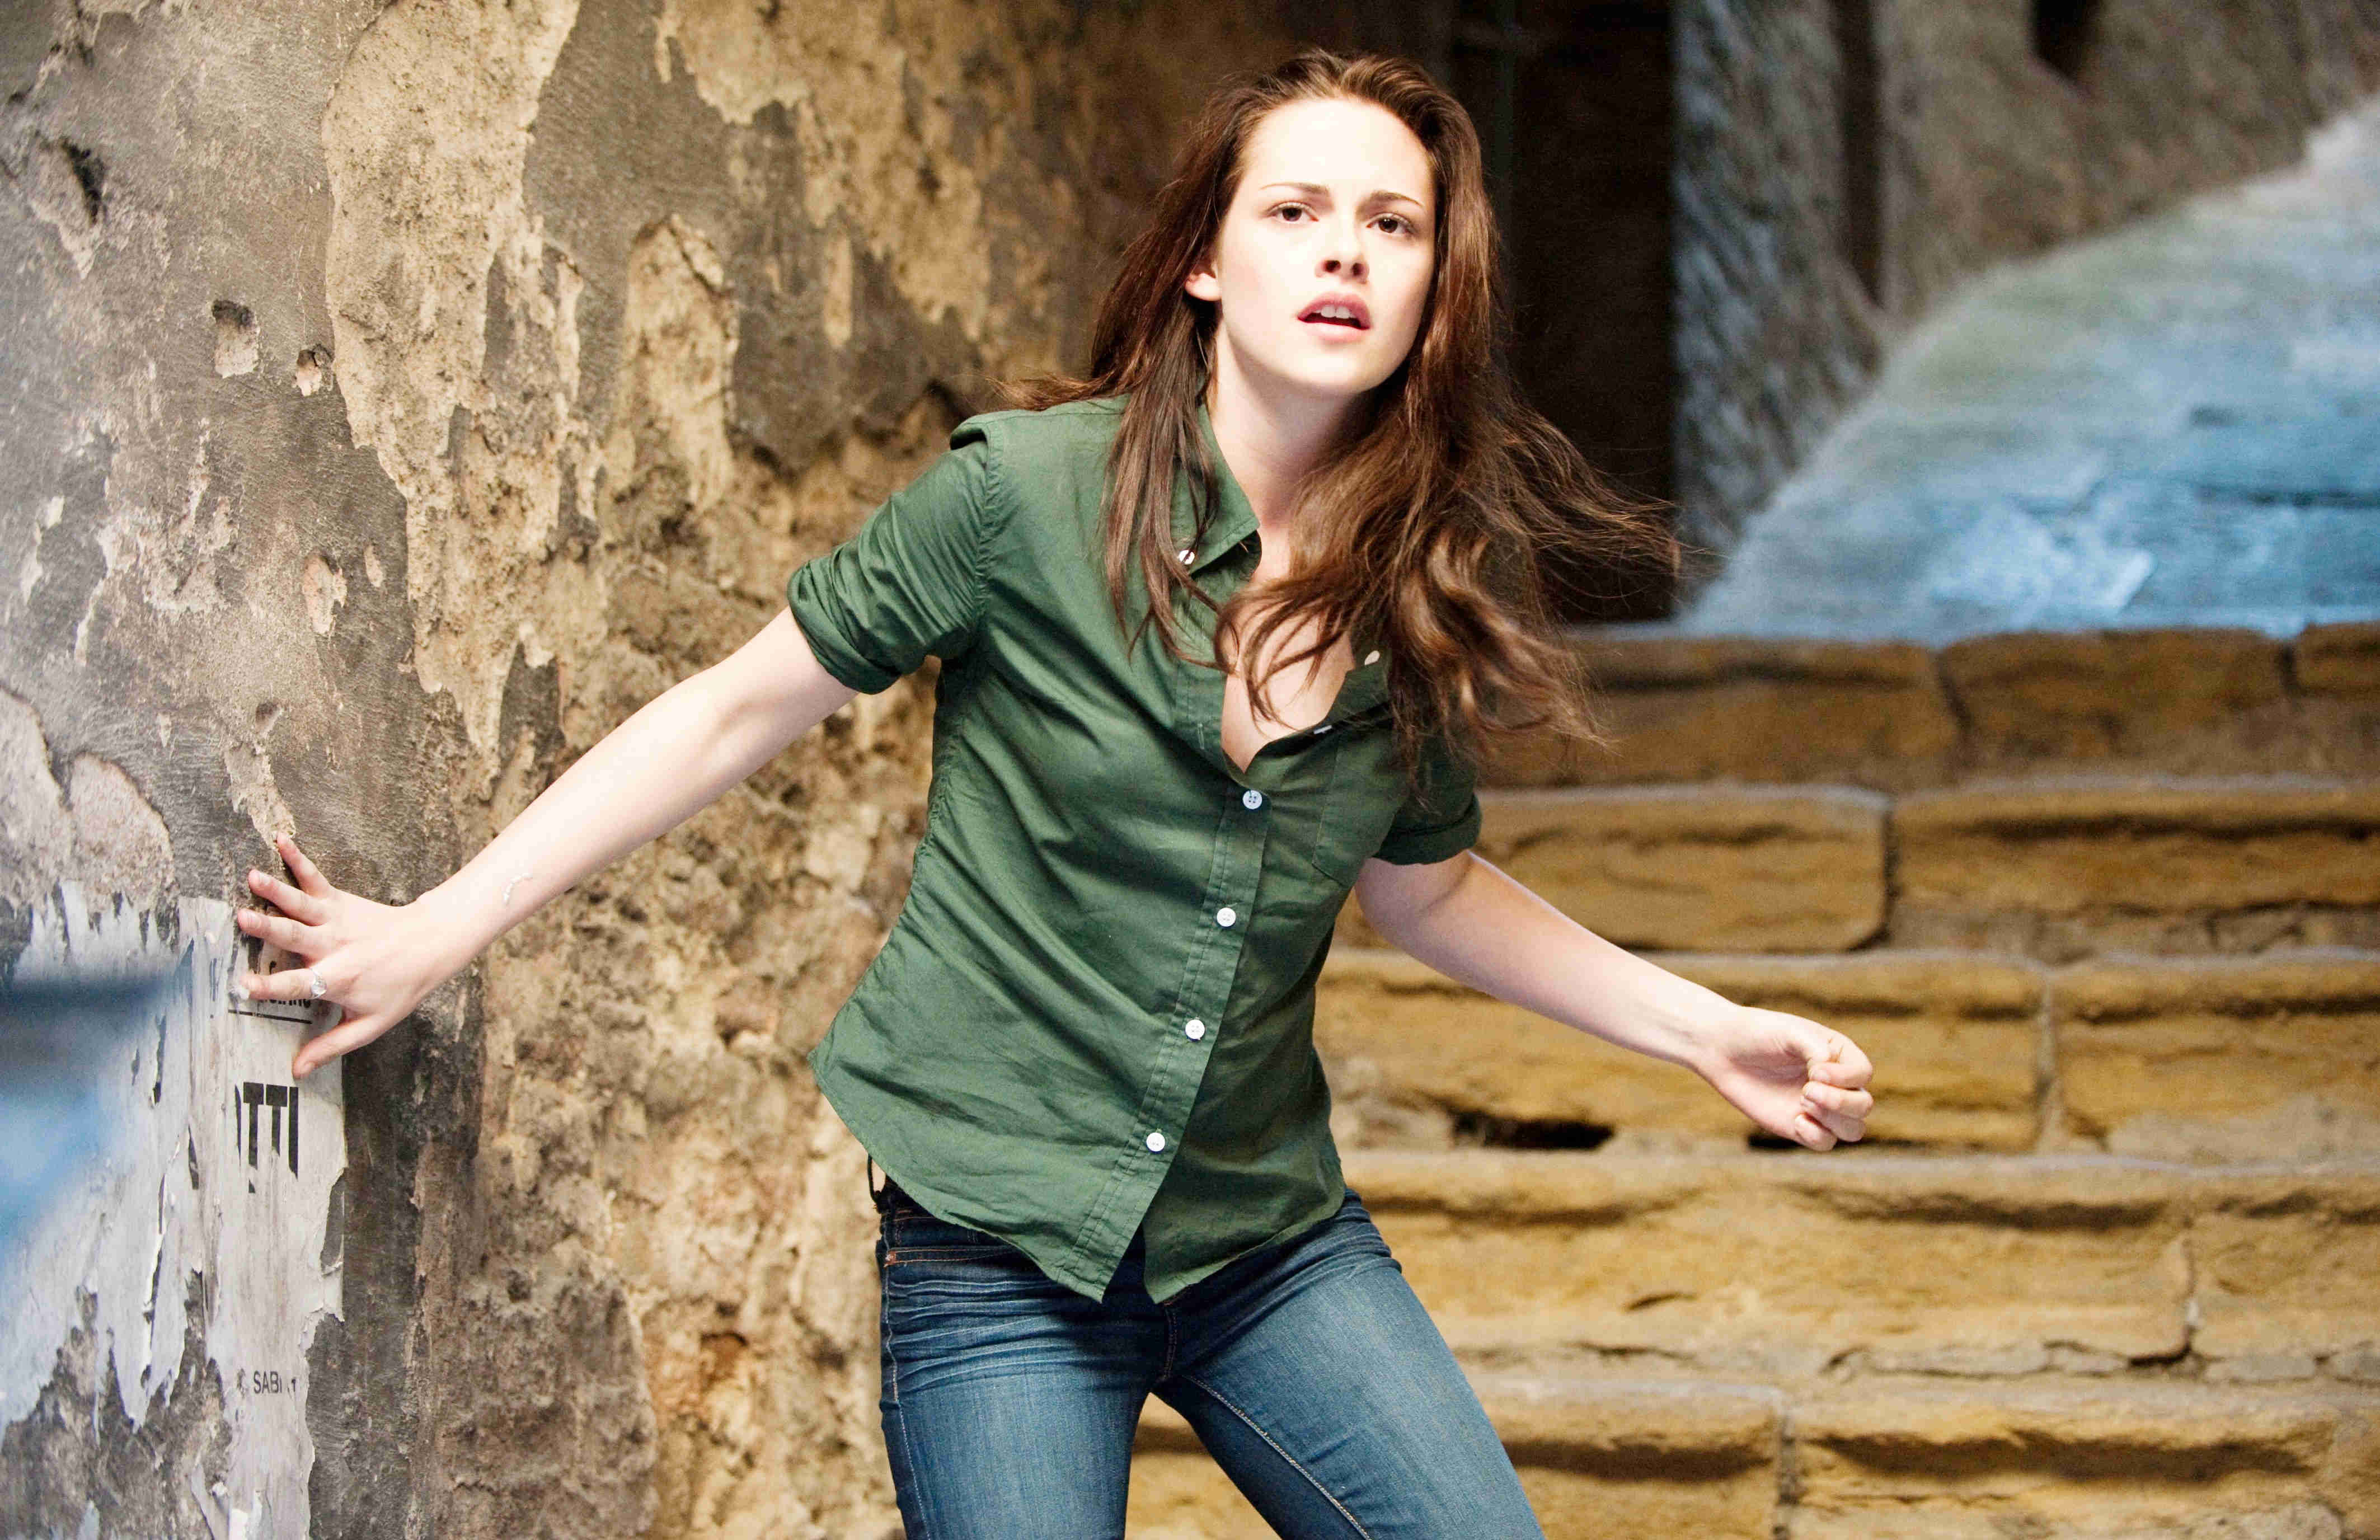 Kristen Stewart stars as Bella Swan in Summit Entertainment's The Twilight Saga's New Moon (2009)